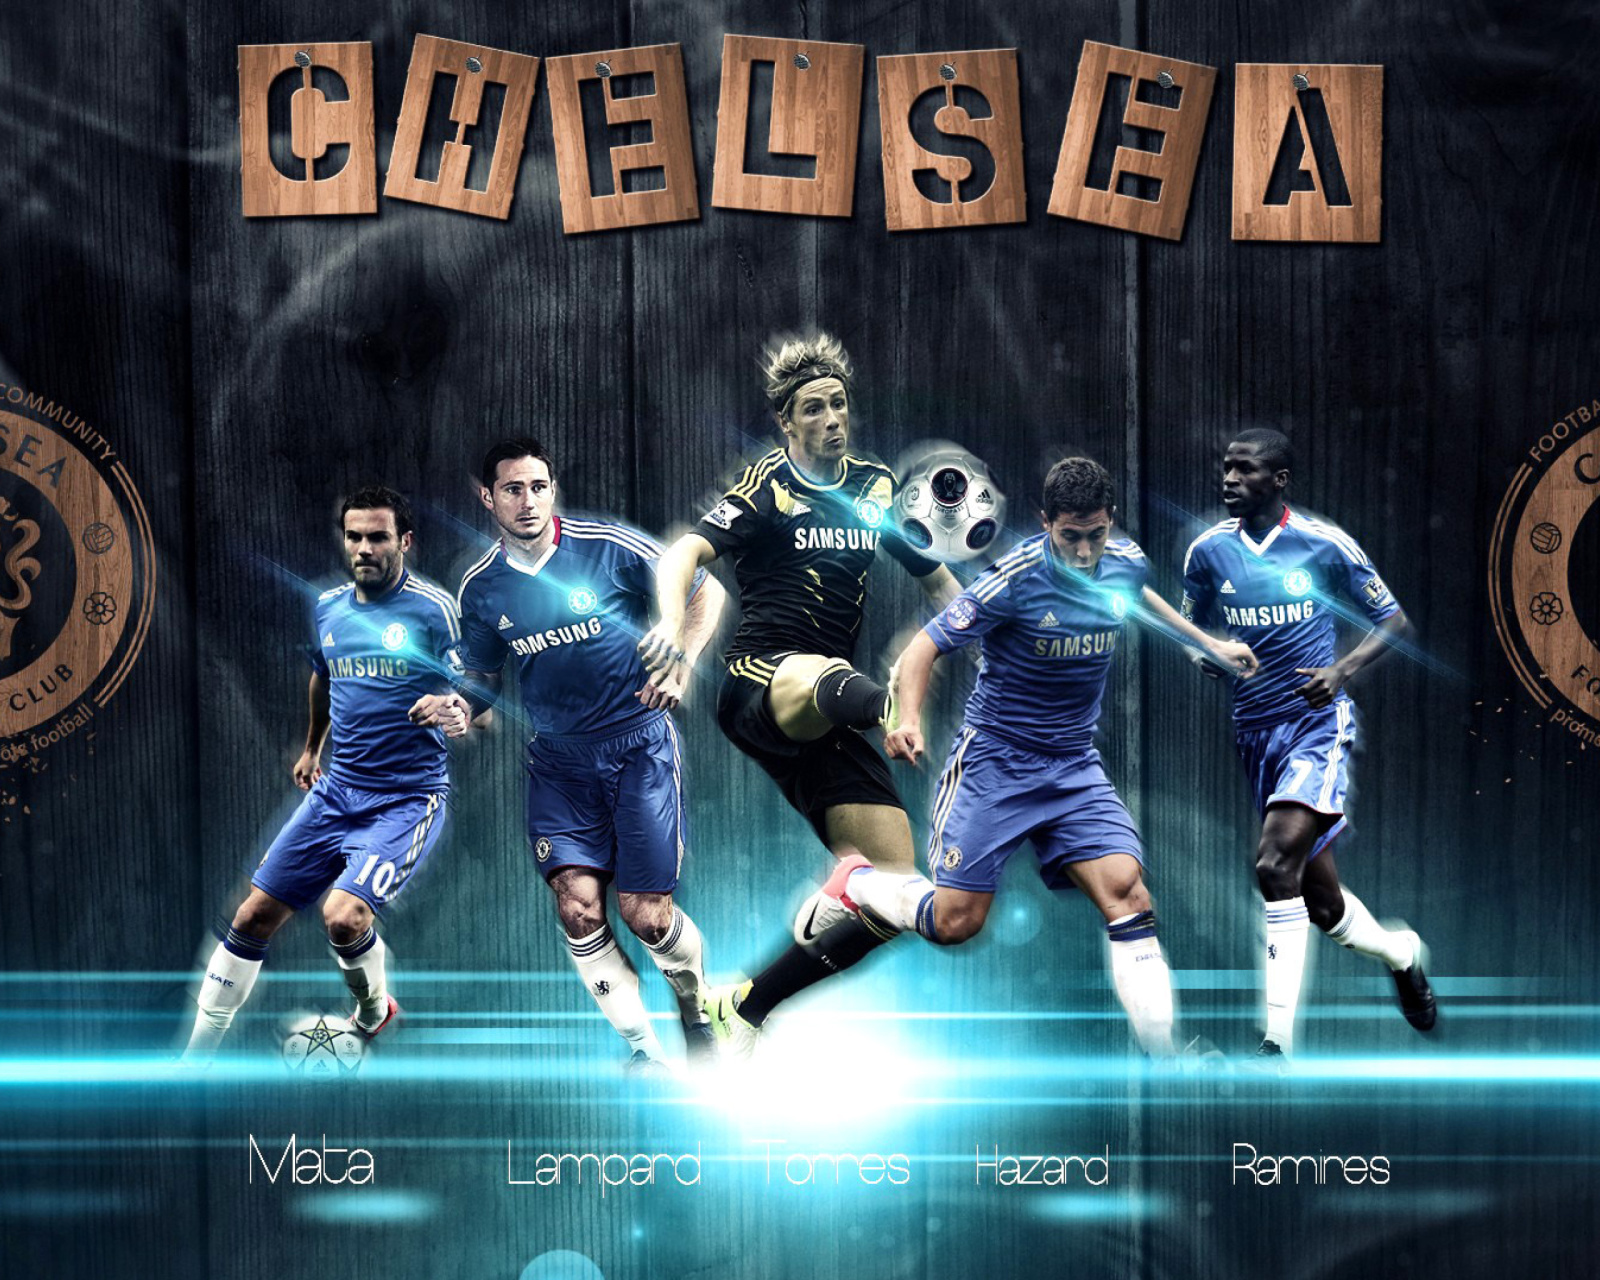 Das Chelsea, FIFA 15 Team Wallpaper 1600x1280